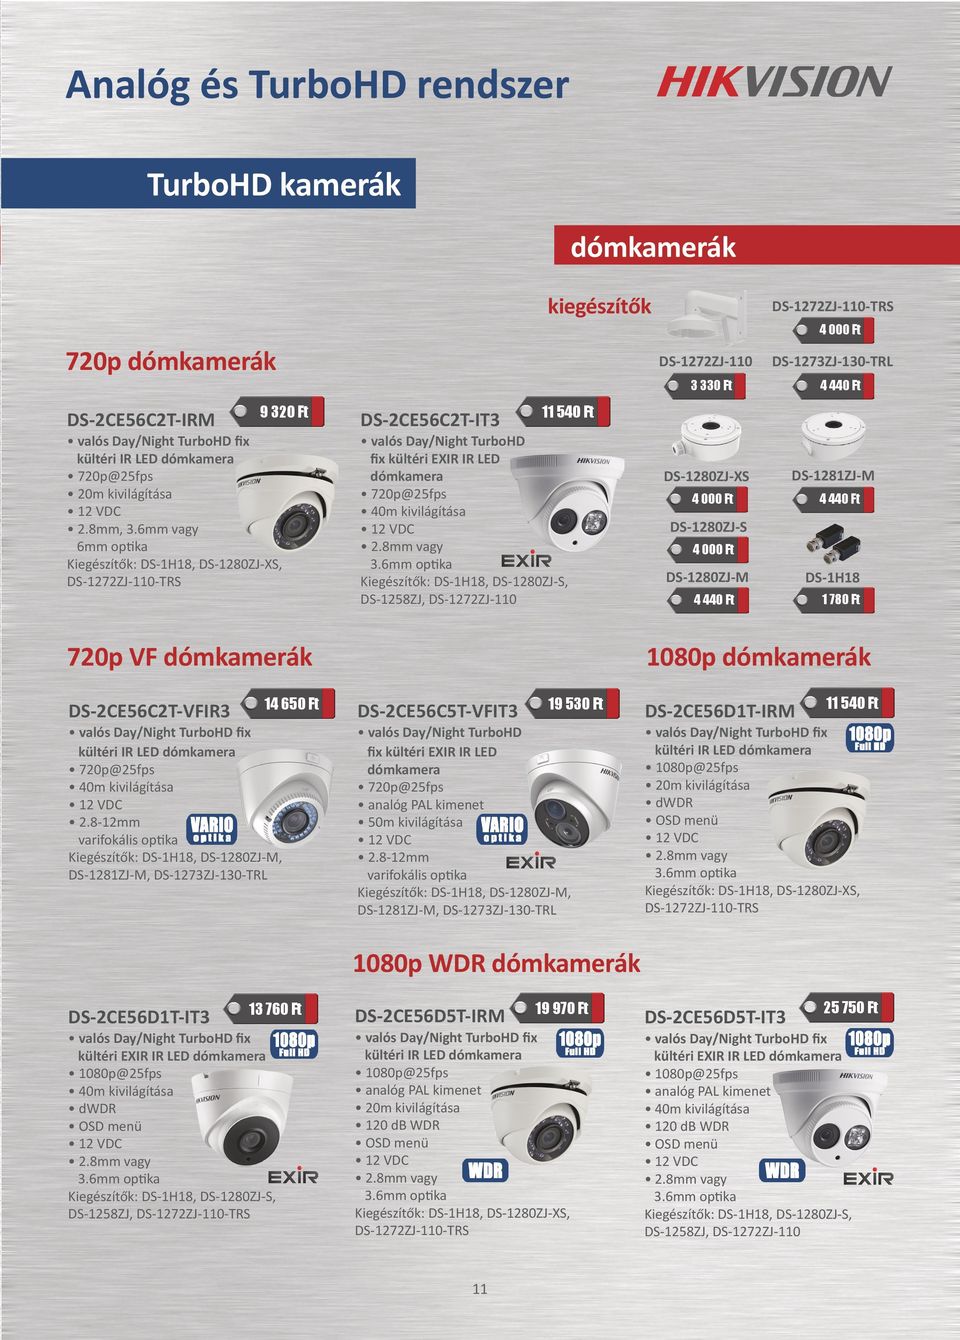 6mm optika Kiegészítők: DS-1H18, DS-1280ZJ-S, DS-1258ZJ, DS-1272ZJ-110 DS-1280ZJ-XS DS-1280ZJ-S DS-1280ZJ-M DS-1281ZJ-M DS-1H18 1 780 Ft 720p VF dómkamerák DS-2CE56C2T-VFIR3 fix kültéri IR LED